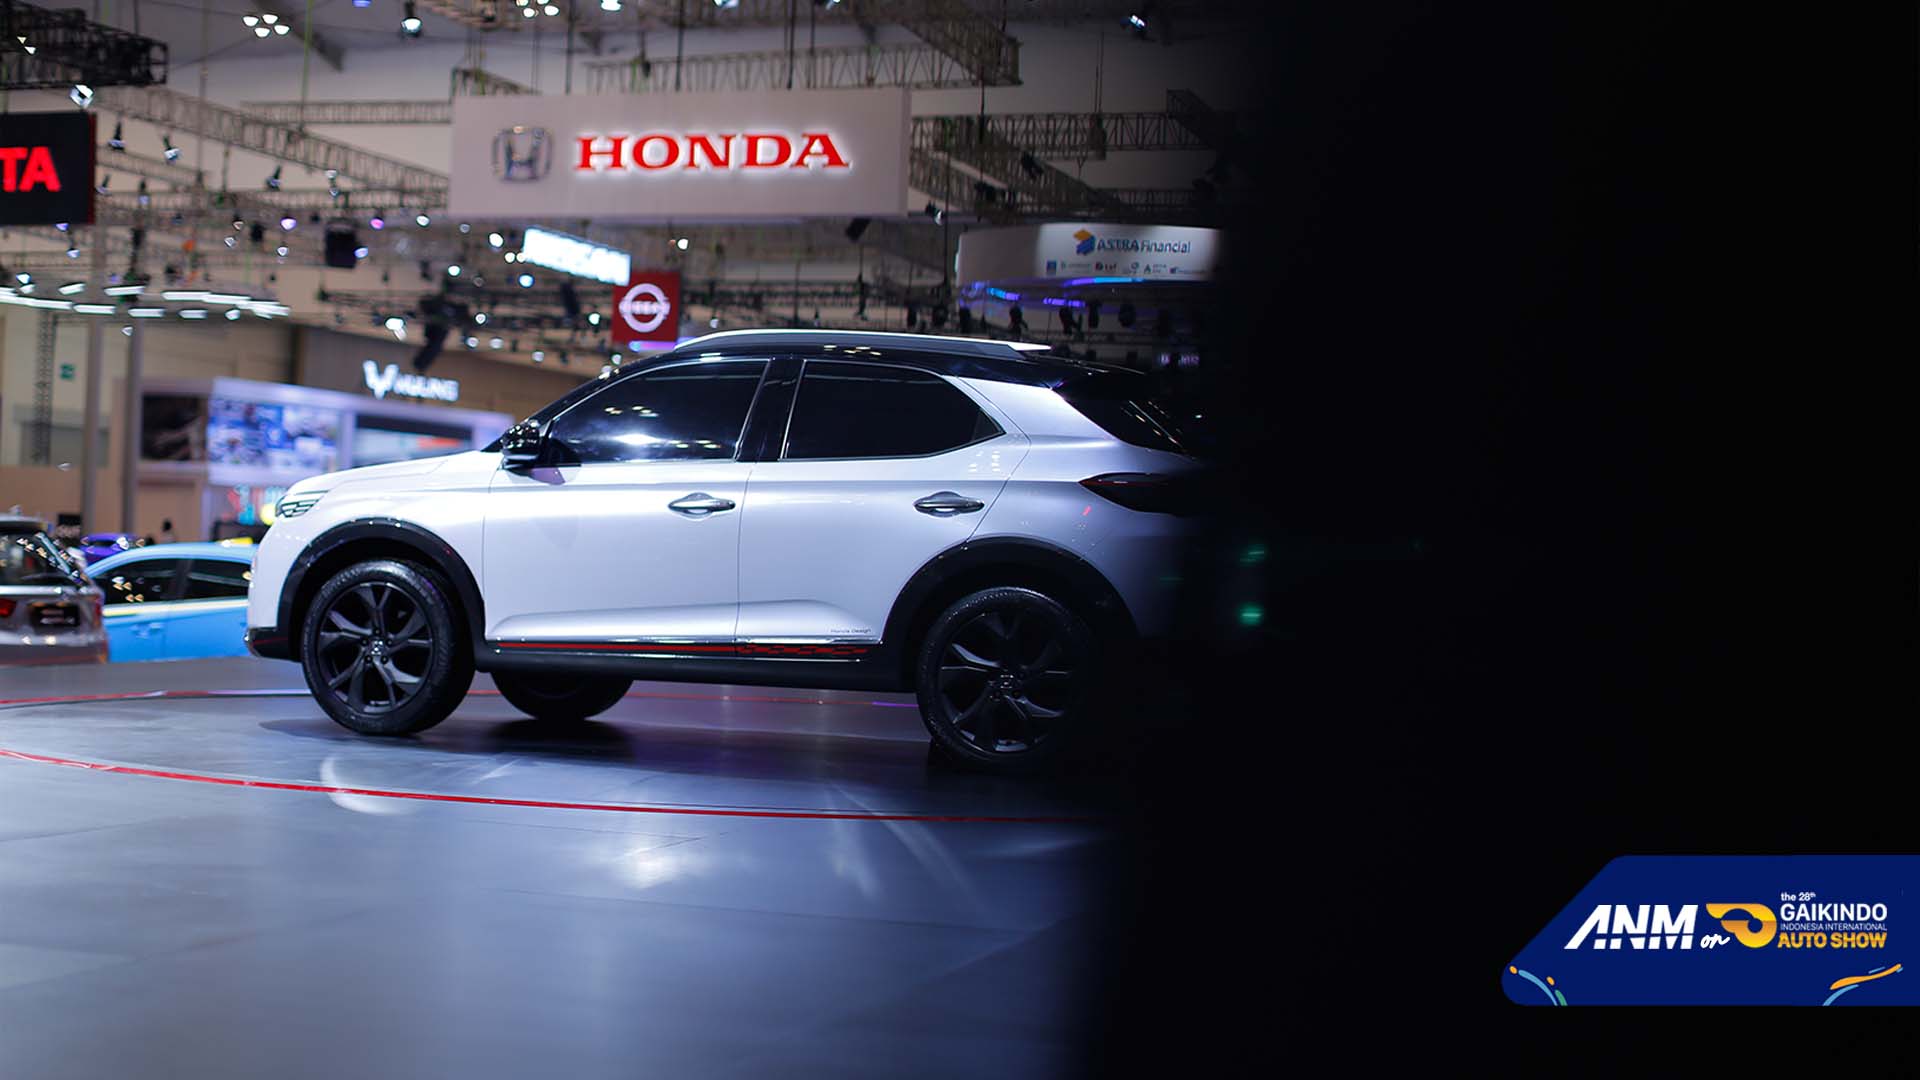 Berita, Spesifikasi Honda SUV RS Concept: GIIAS 2021 : Foto Lengkap Honda SUV RS Concept, Emang Ganteng!